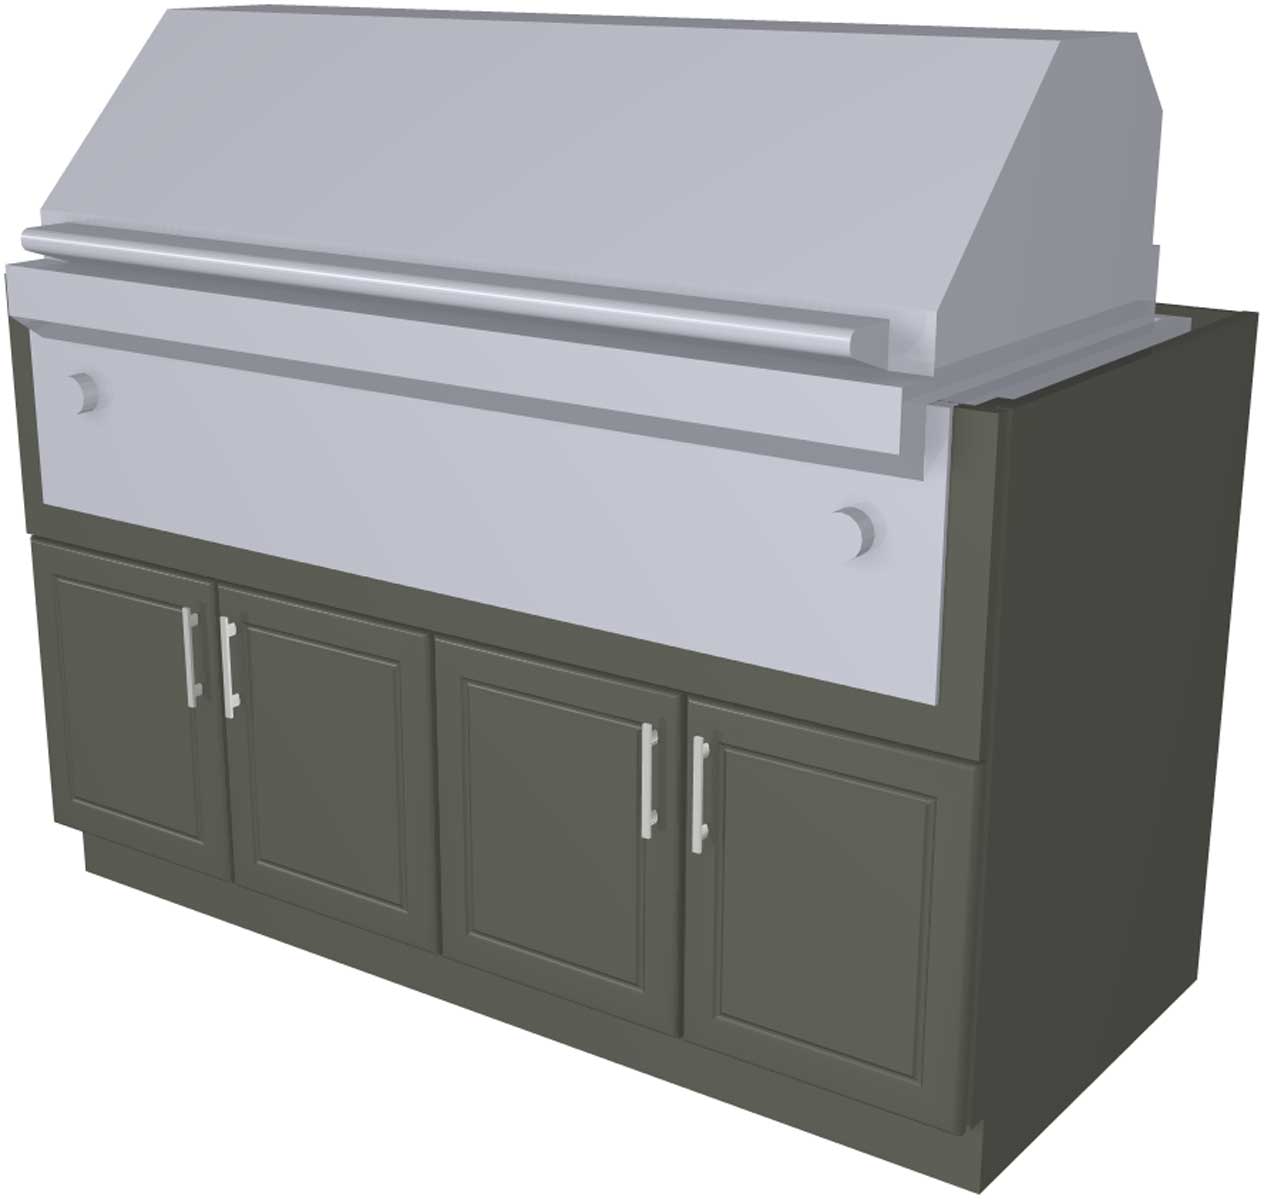 outdoor-cabinets-for-grills-4-door